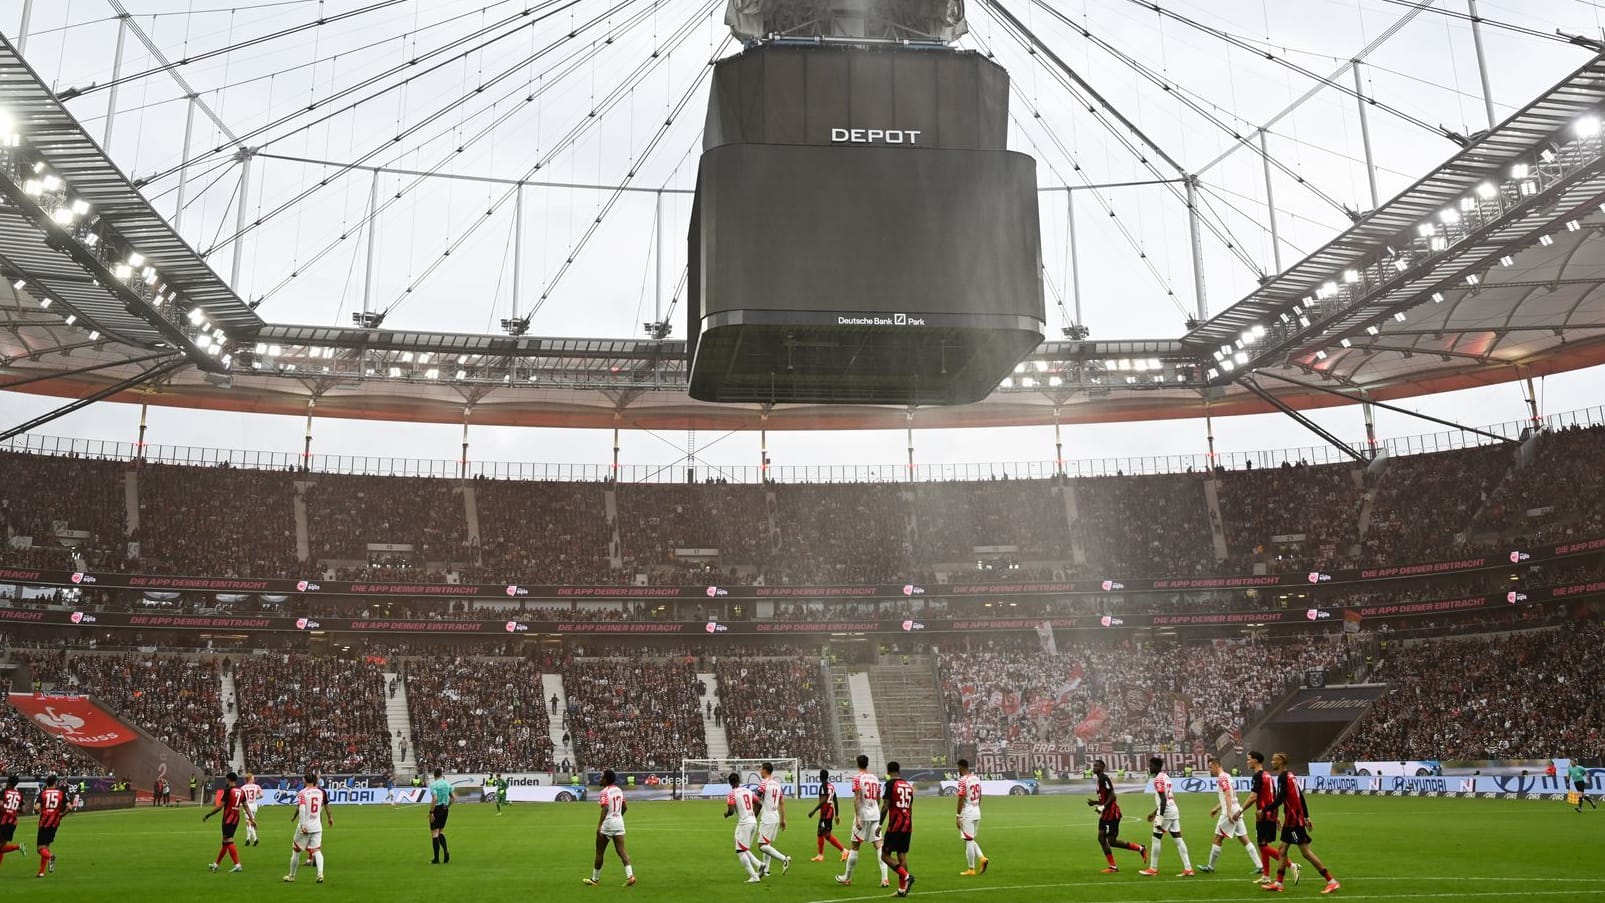 Bundesliga: Videowürfel senkt sich ab  – Spiel in Frankfurt unterbrochen